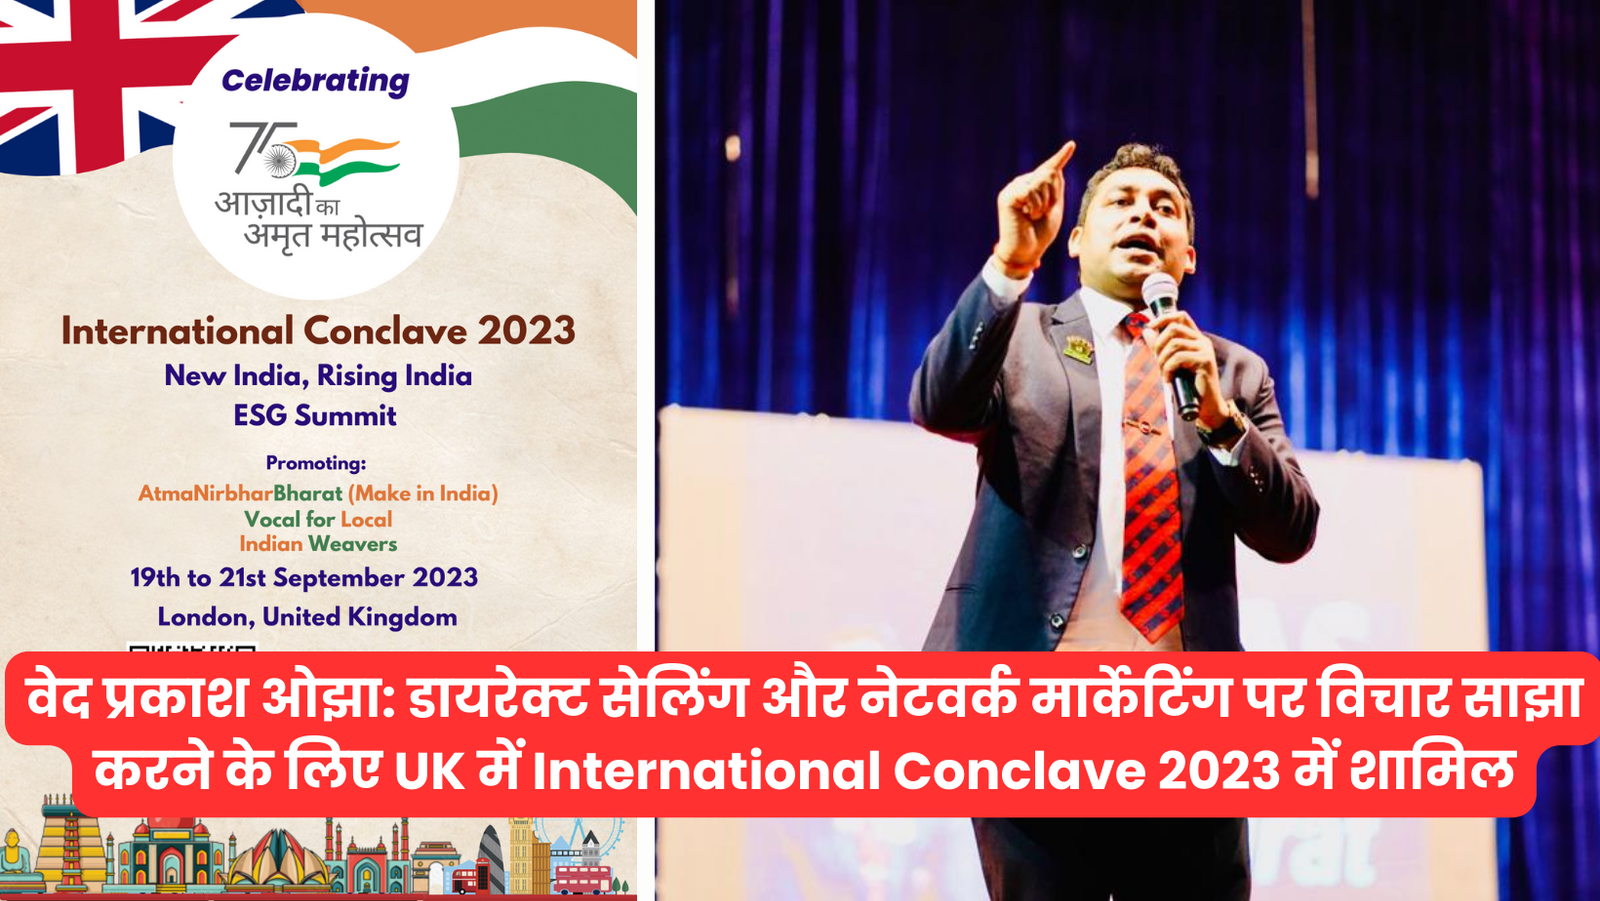 वेद प्रकाश ओझा: डायरेक्ट सेलिंग और नेटवर्क मार्केटिंग पर विचार साझा करने के लिए UK में International Conclave 2023 में शामिल